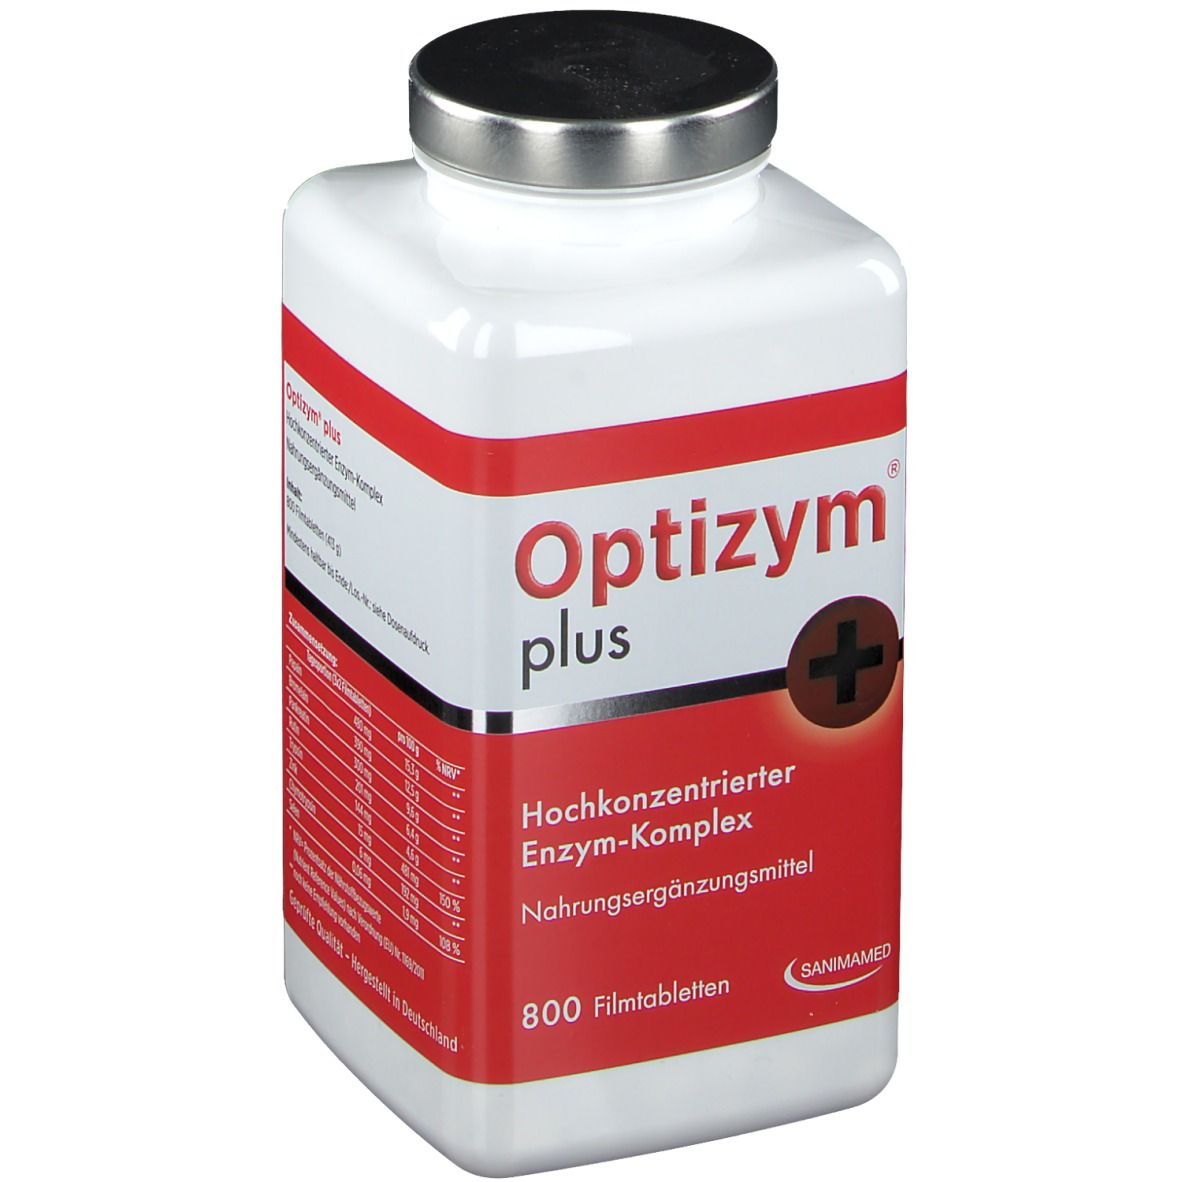 OPTIZYM hochkonzentrierter Enzym-Komplex